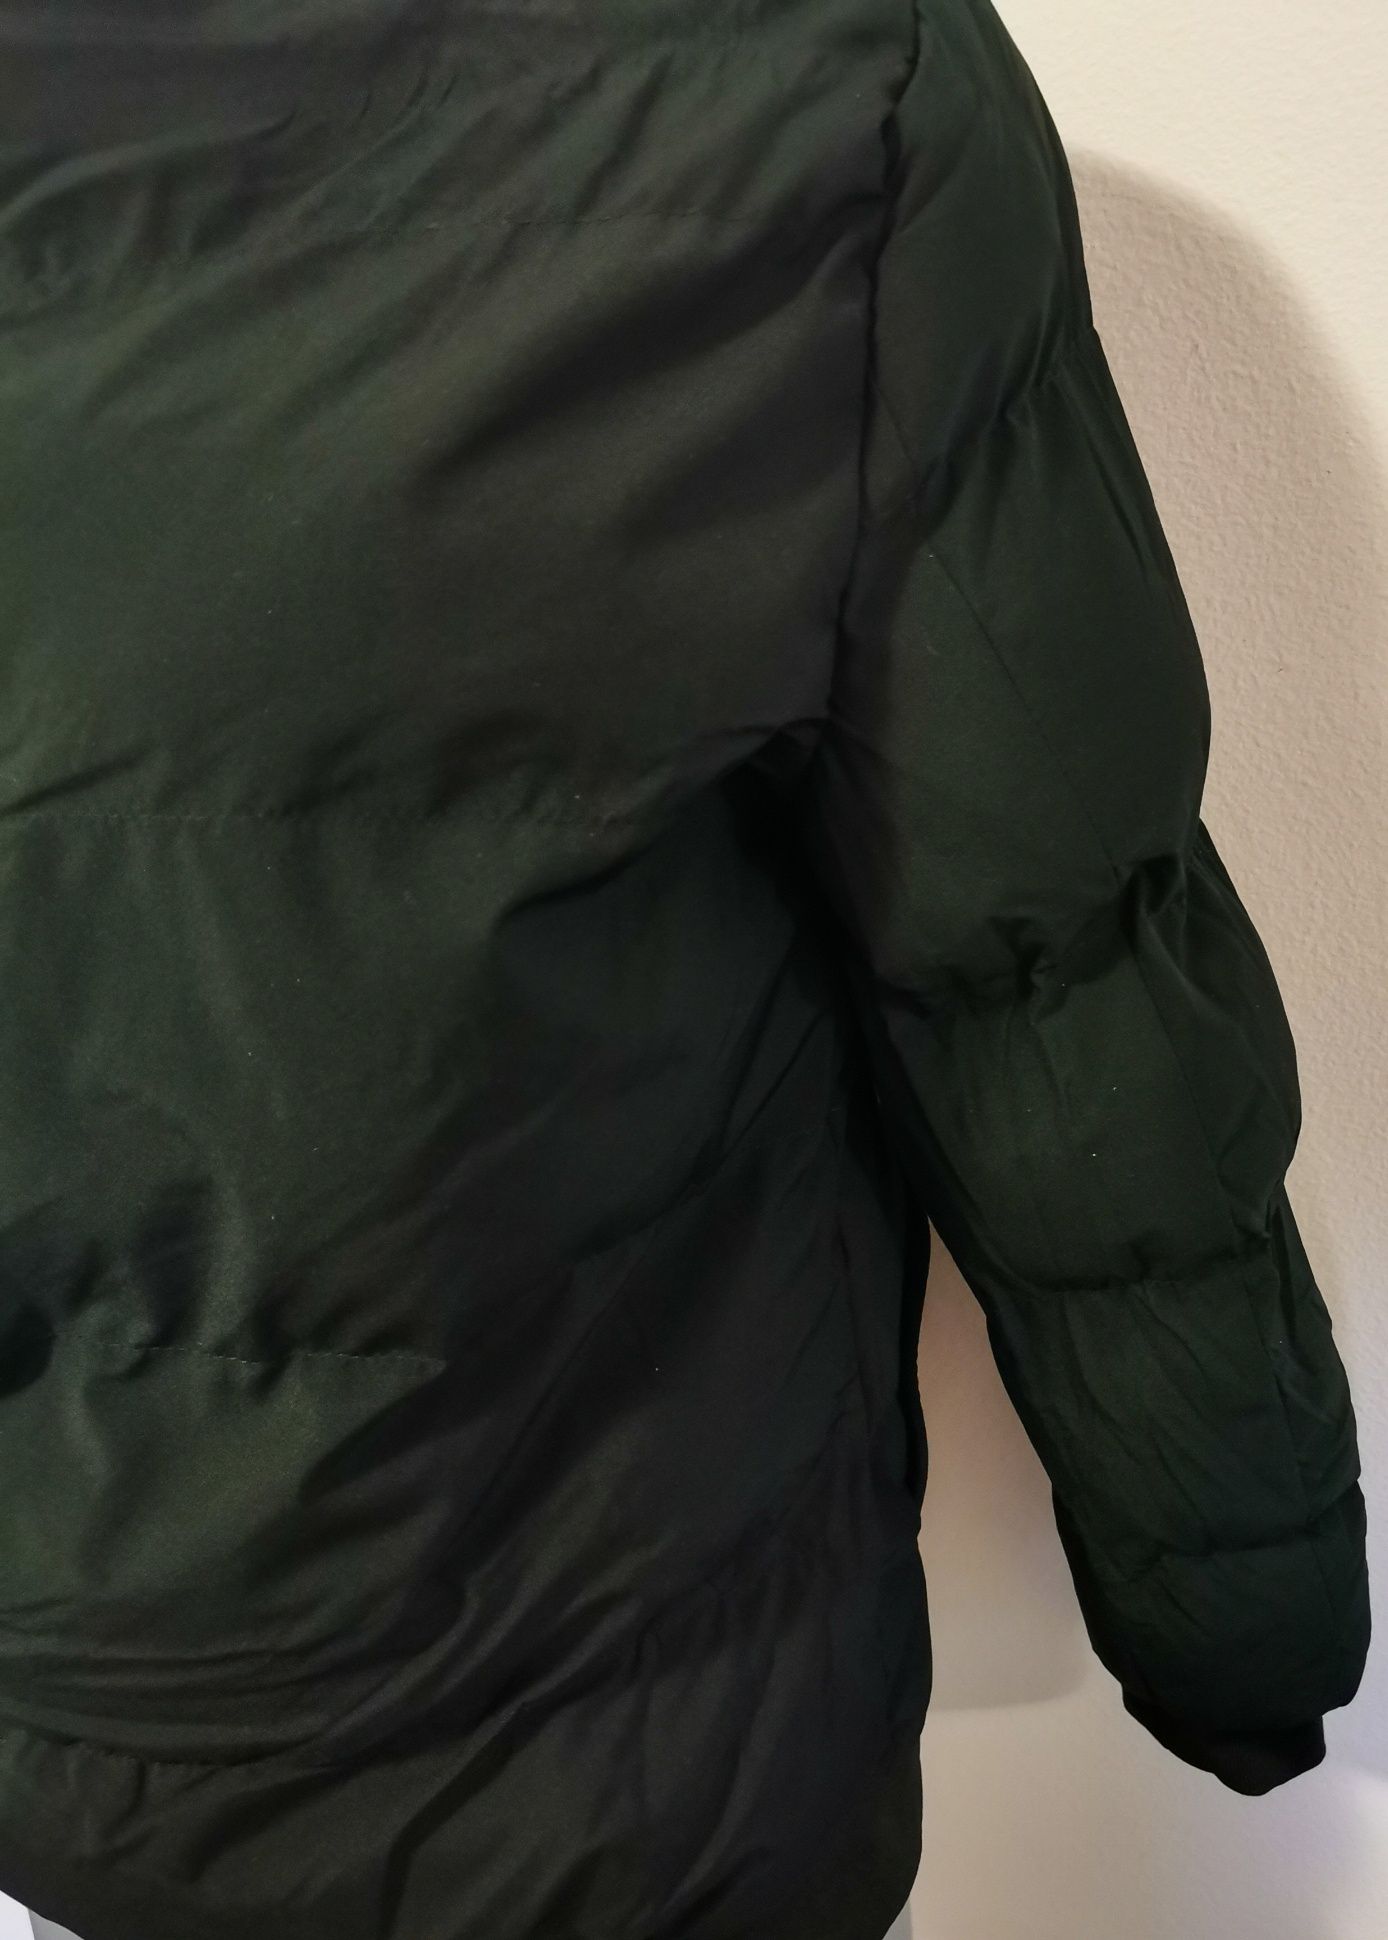 Ново мъжко яке, плътно и дебело, тип бомбър, М-размер-35лв.